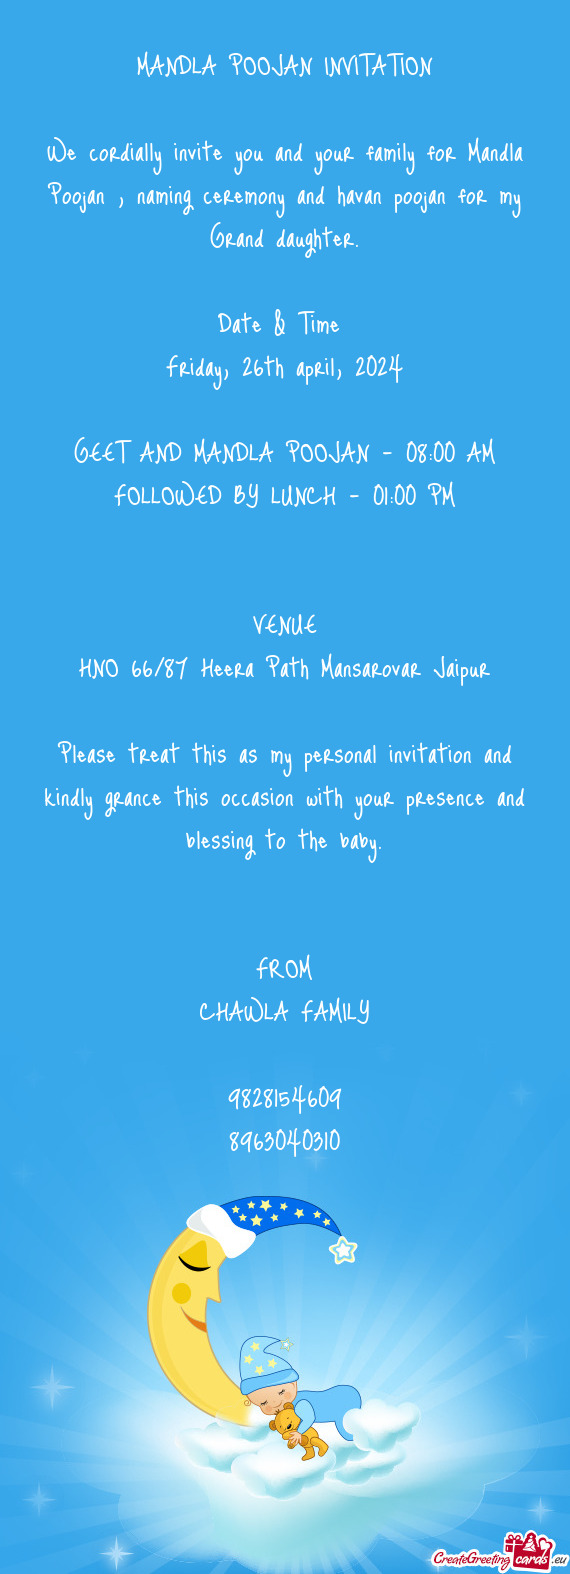 MANDLA POOJAN INVITATION